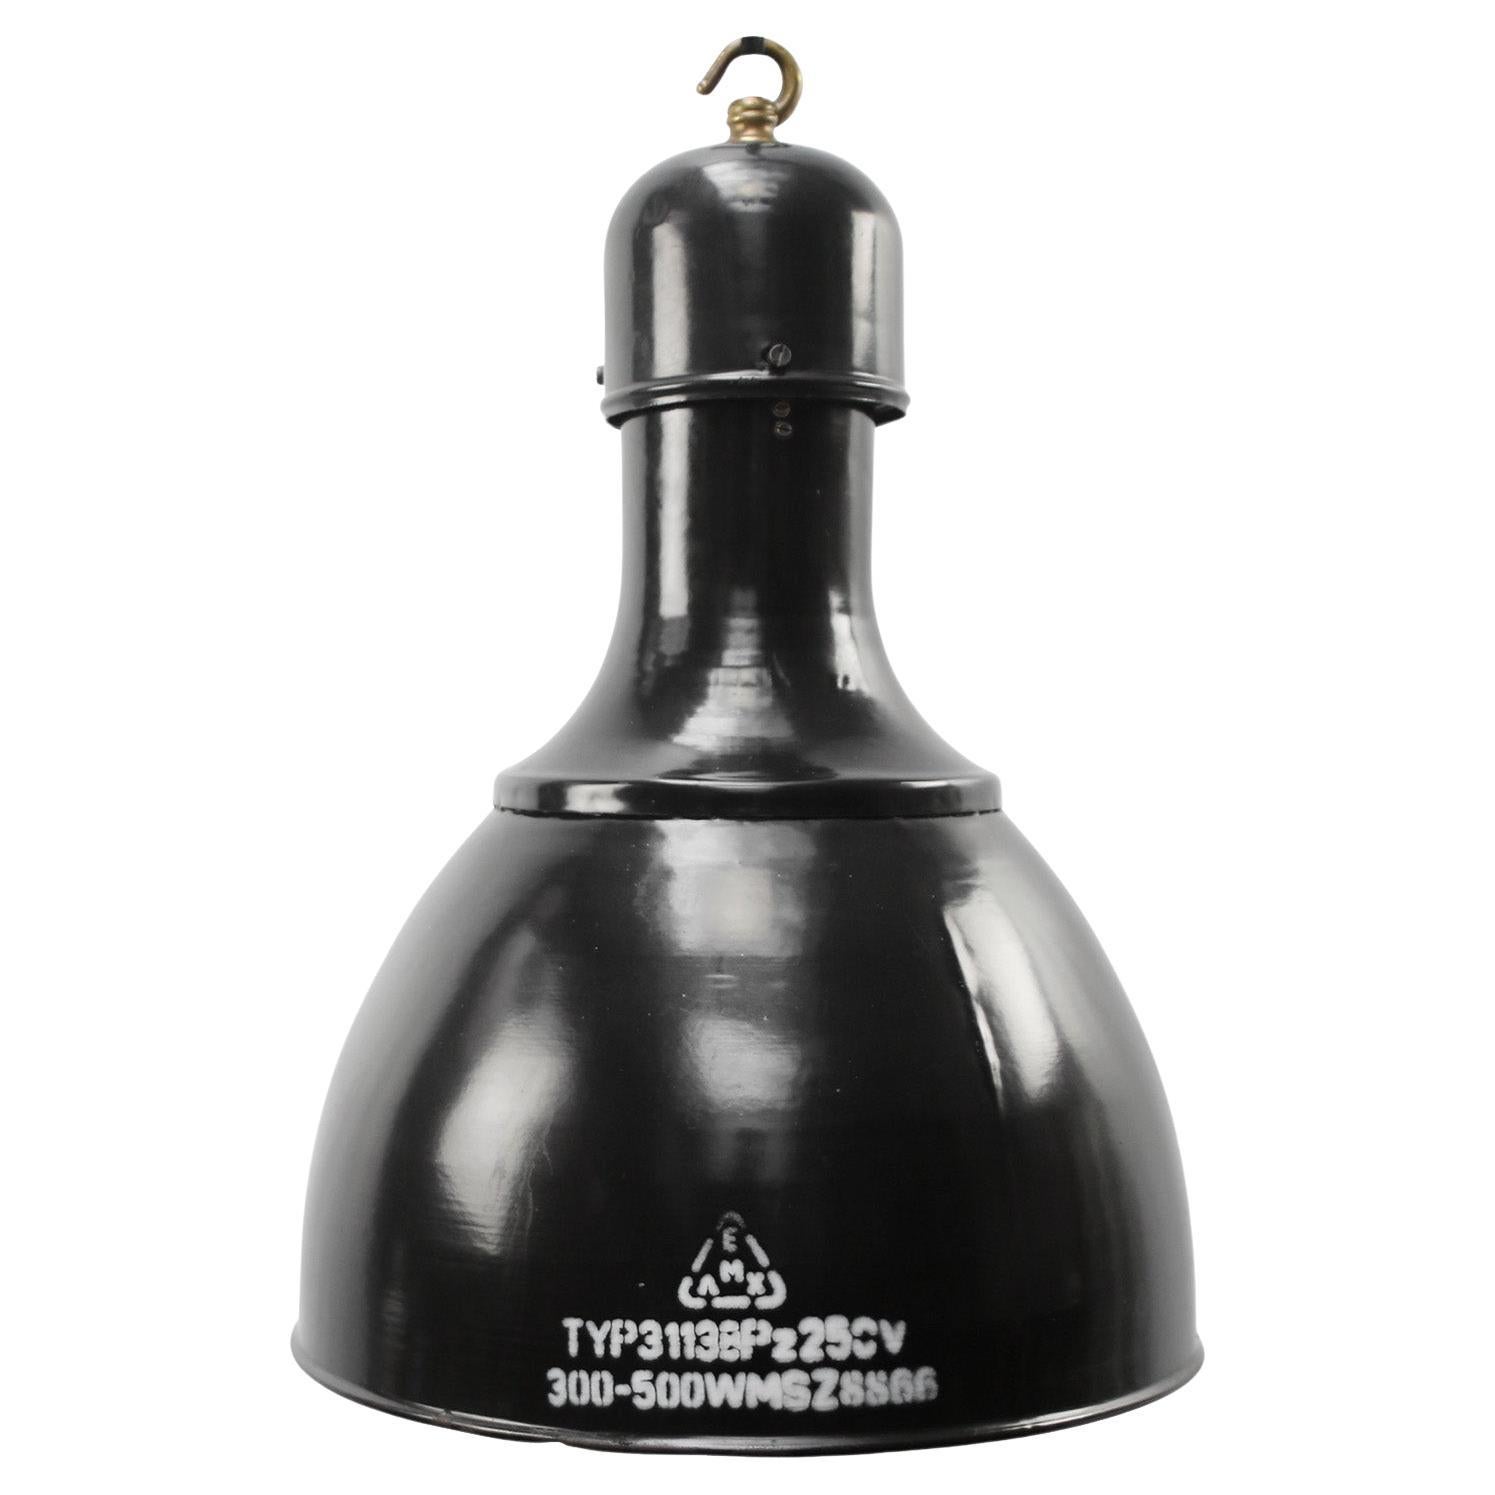 Lampes suspendues en laiton émaillé noir, de style industriel vintage